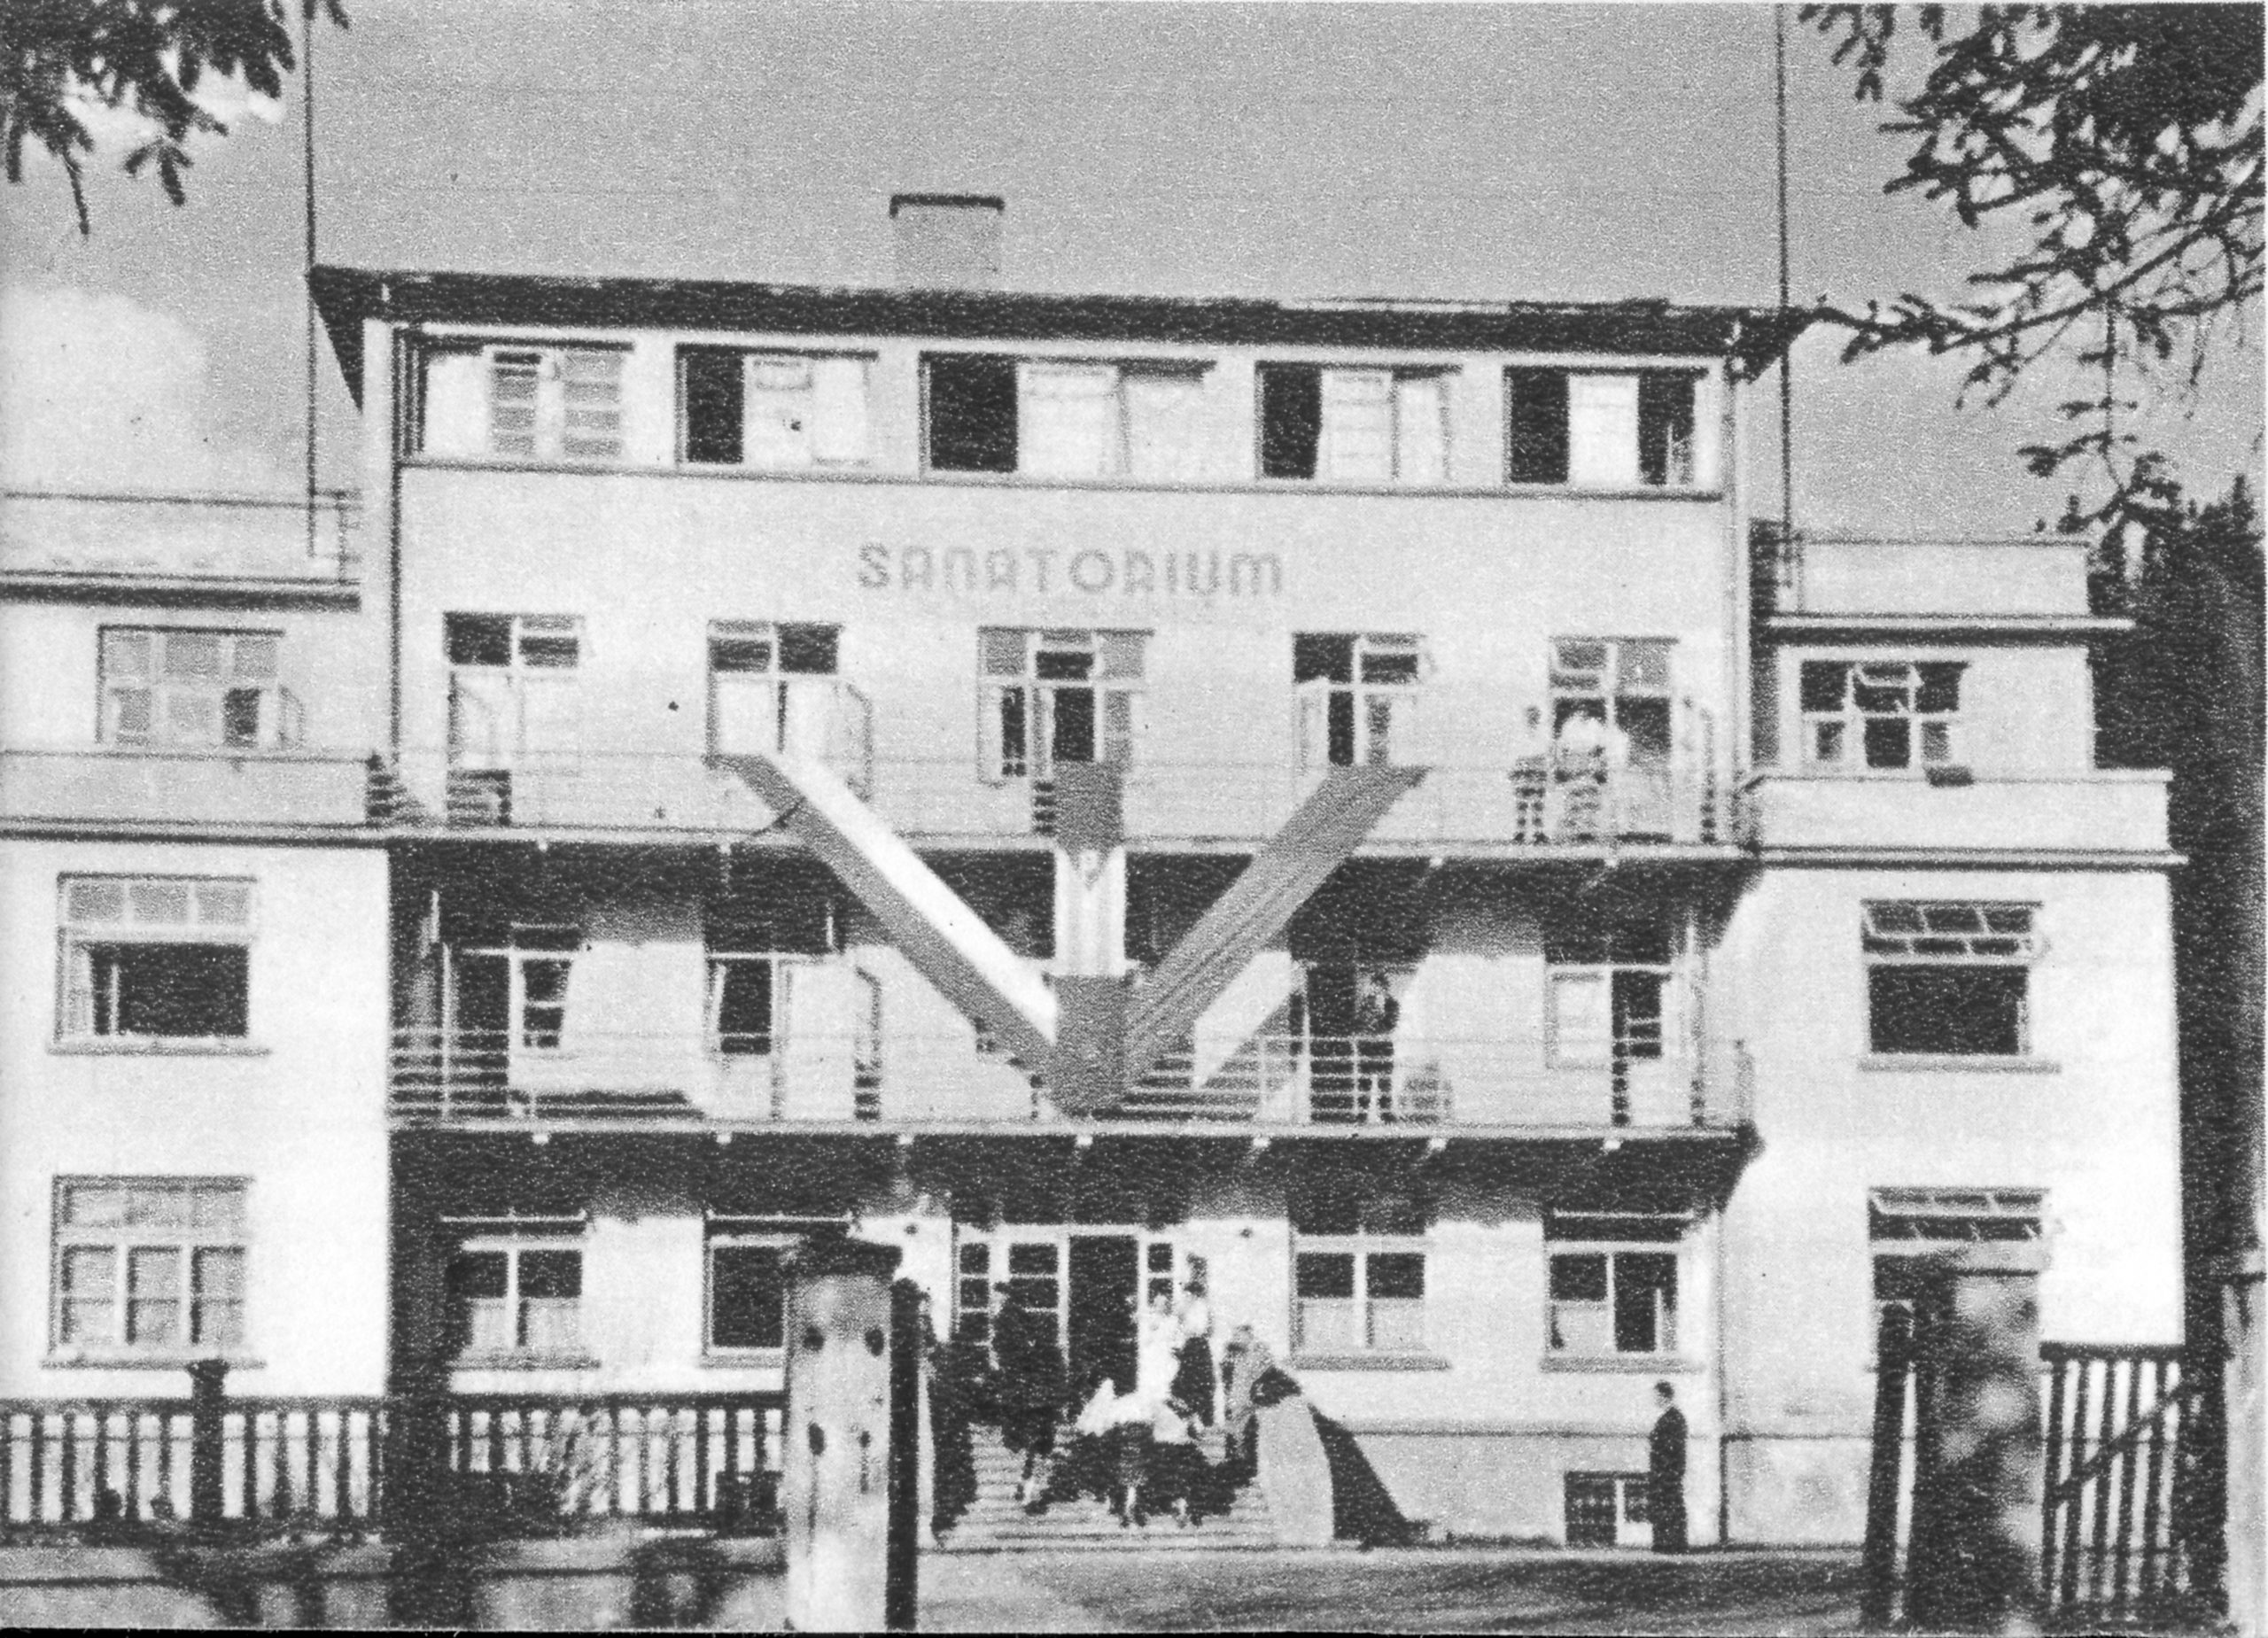 Fotografia czarnobiała przedstawia budynek Palace z napisem Sanatorium